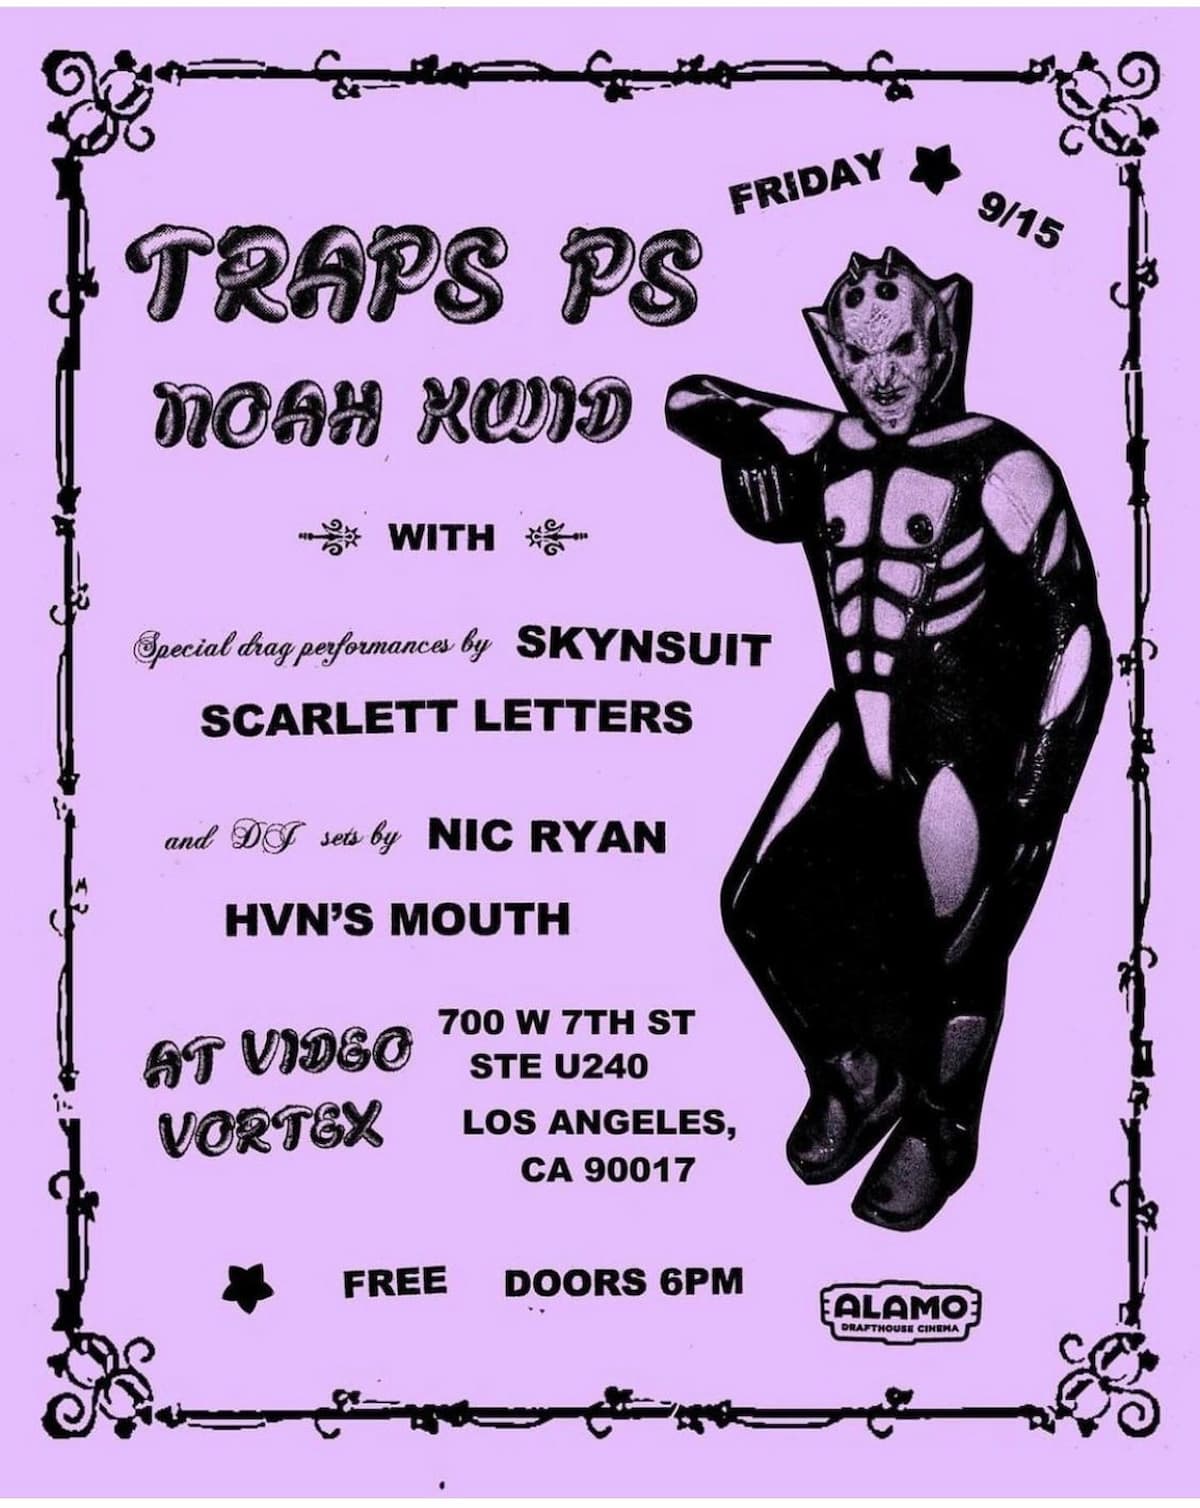 Traps PS / Noah Kwid / SKYNSUIT / Scarlett Letters